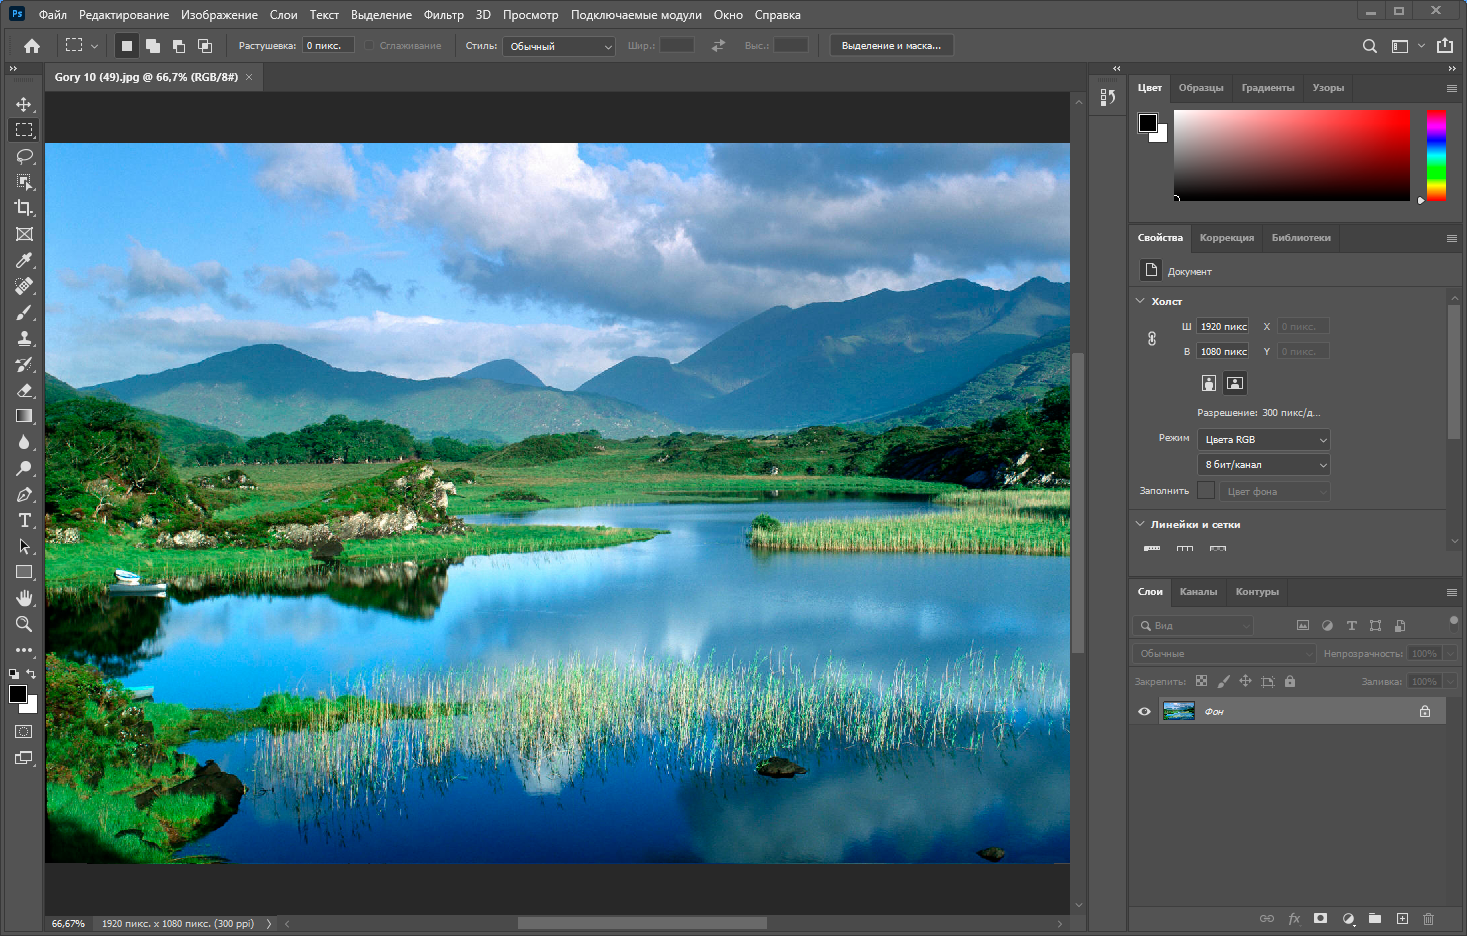 Adobe Photoshop 2021 22.5.4.631 RePack by KpoJIuK [Multi/Ru]